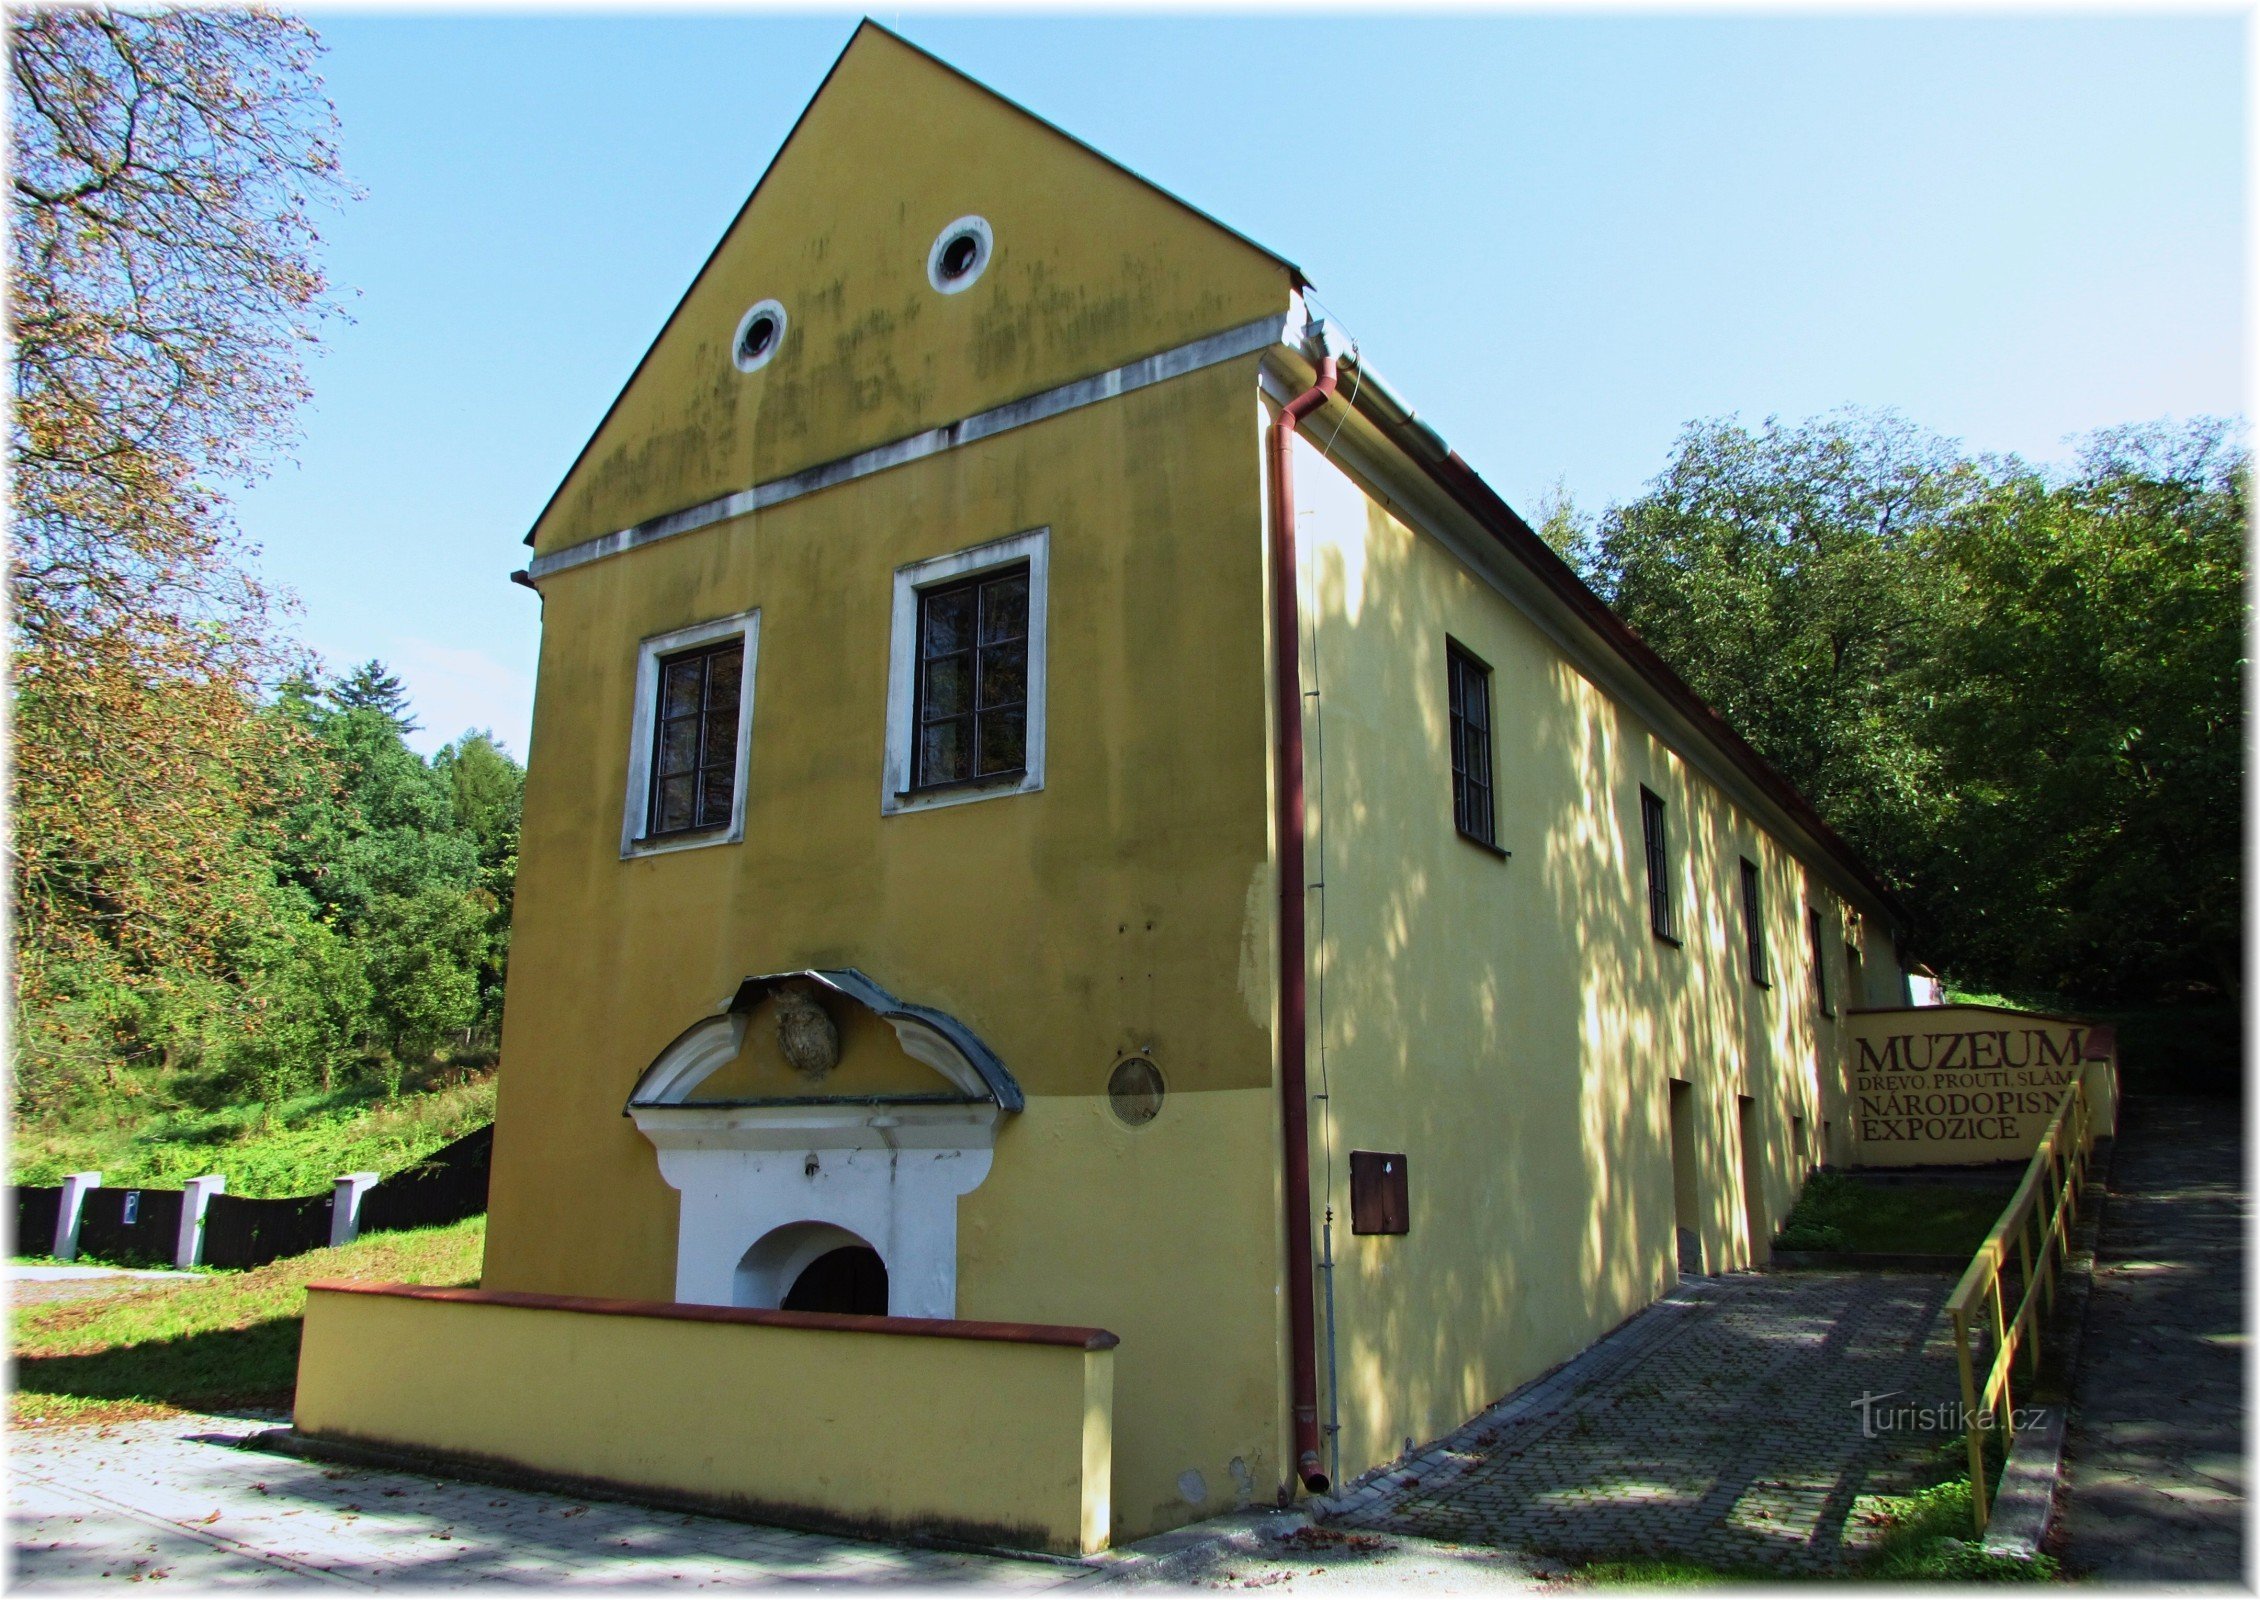 Obiekt muzealny Hájenky na zamku w Malenowicach